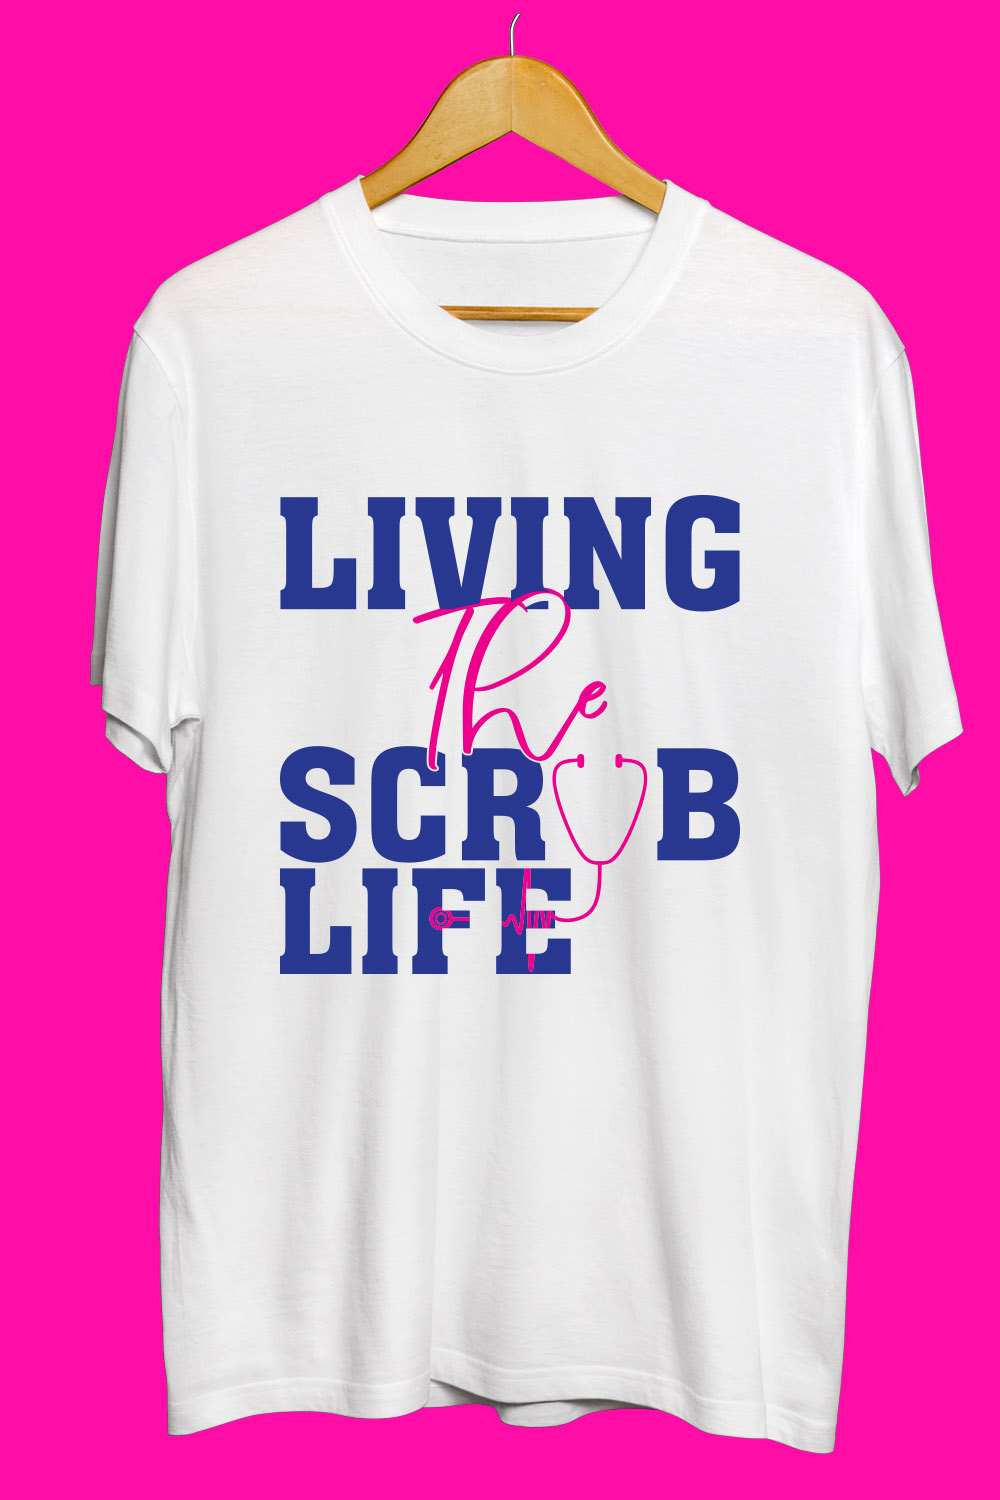 Nurse Day SVG T Shirt Designs Bundle pinterest preview image.